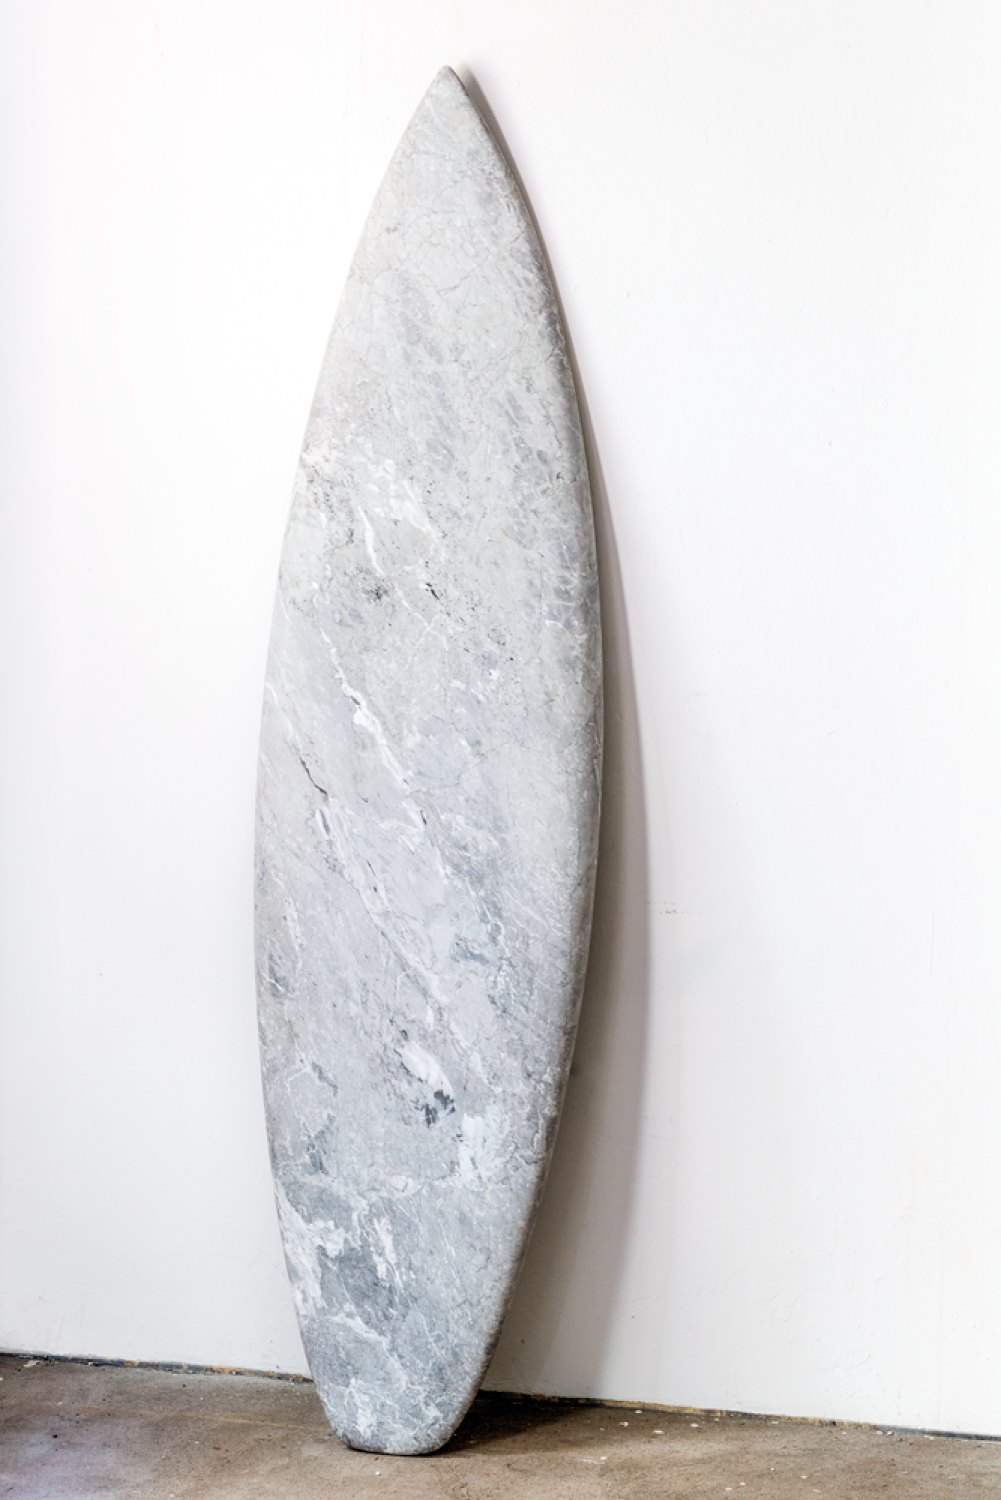 Reena Spaulings Mollusk (Bardiglio), 2014 Marble, 199 × 51 × 4 cm